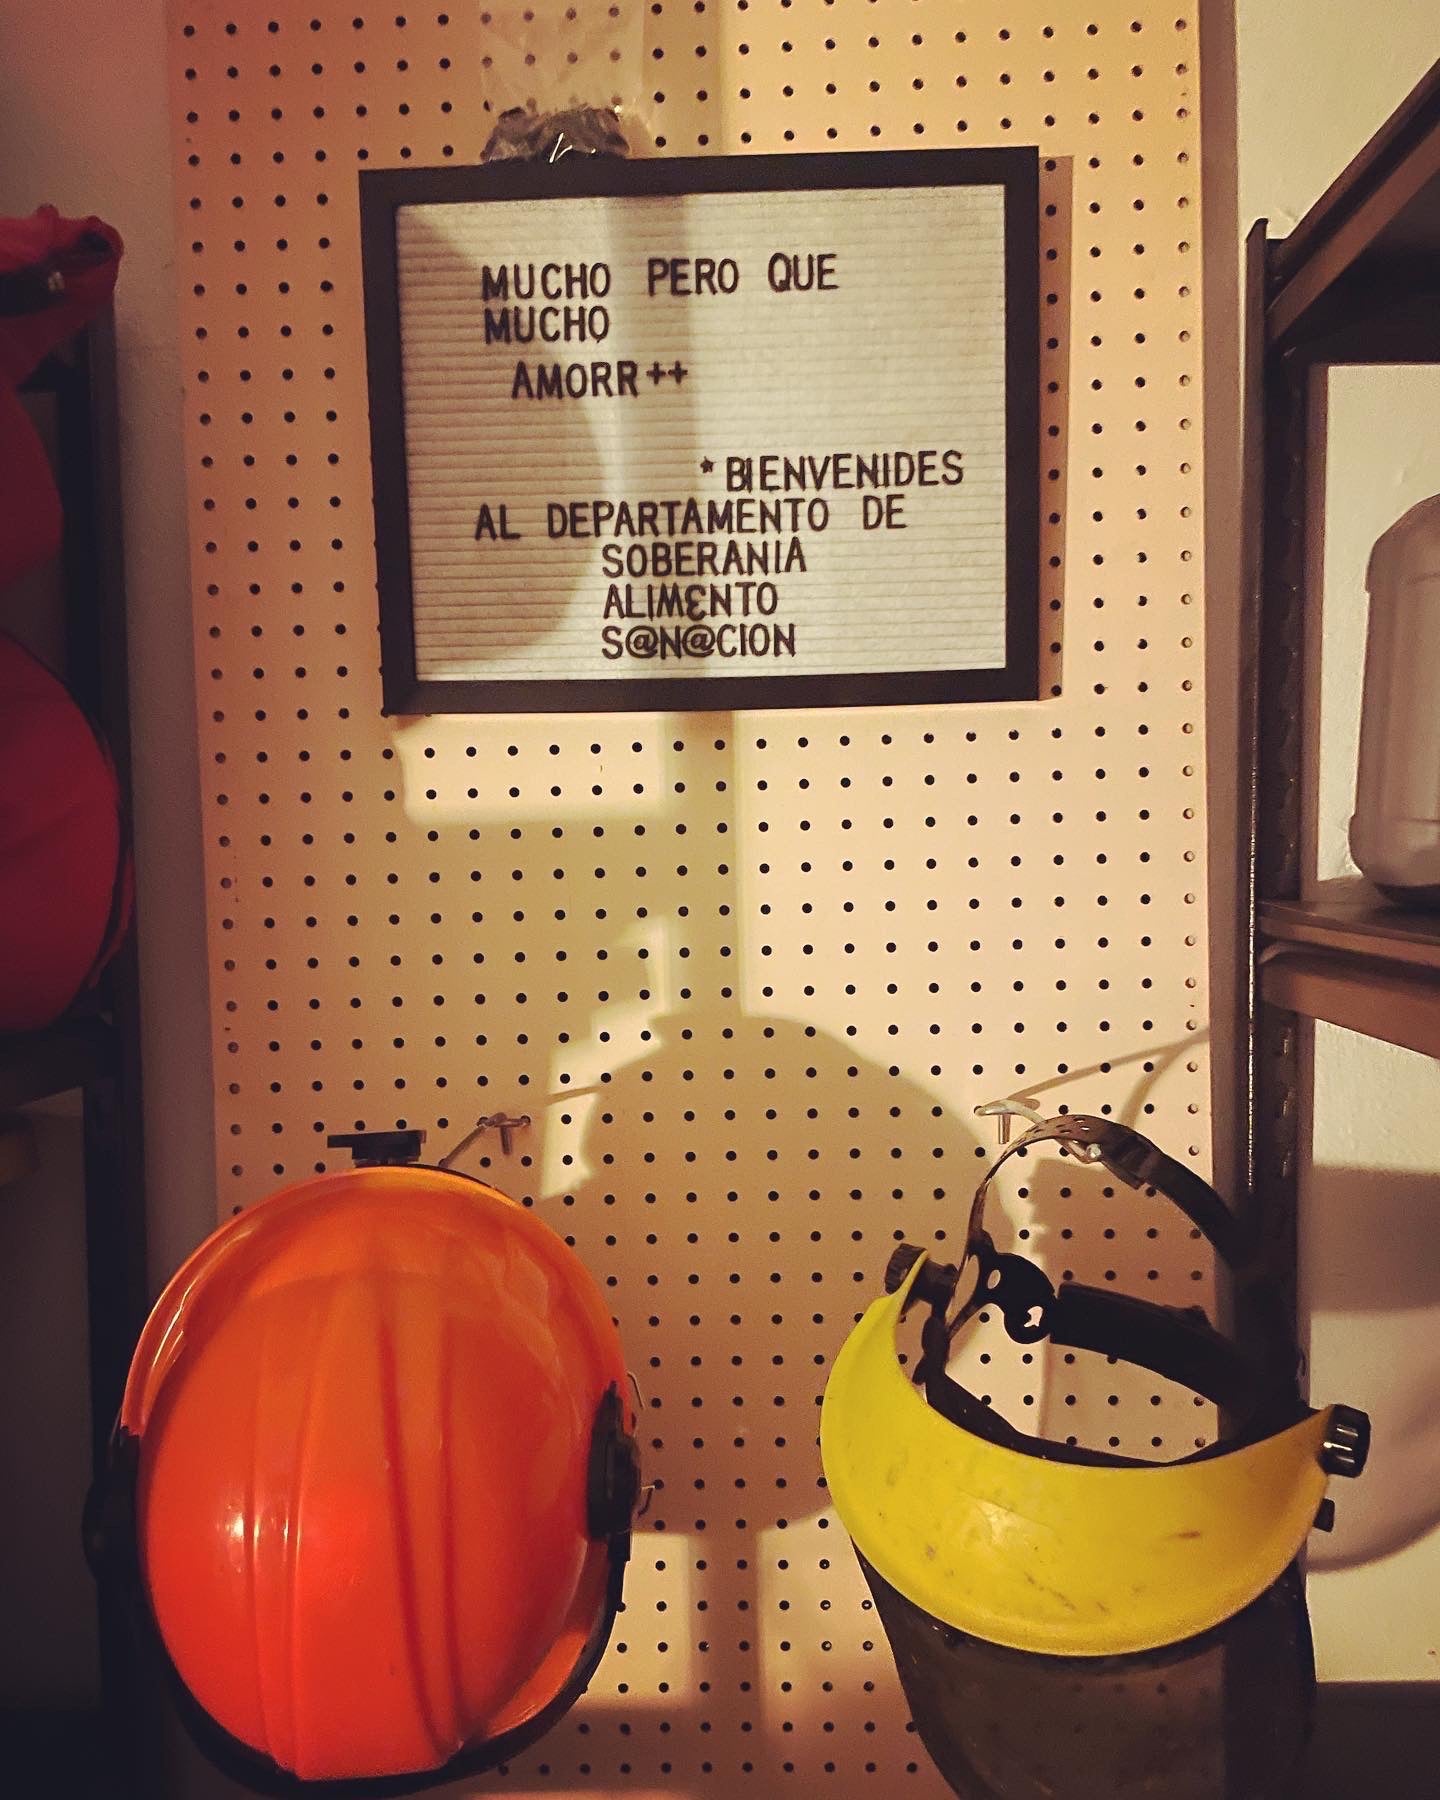 un pegboard que tiene un letrero que dice "Much pero que mucho amorr++. Bienvenides al Departamento de Soberania, Aliemnto, Sanacion". Abajo, son 2 cascos.